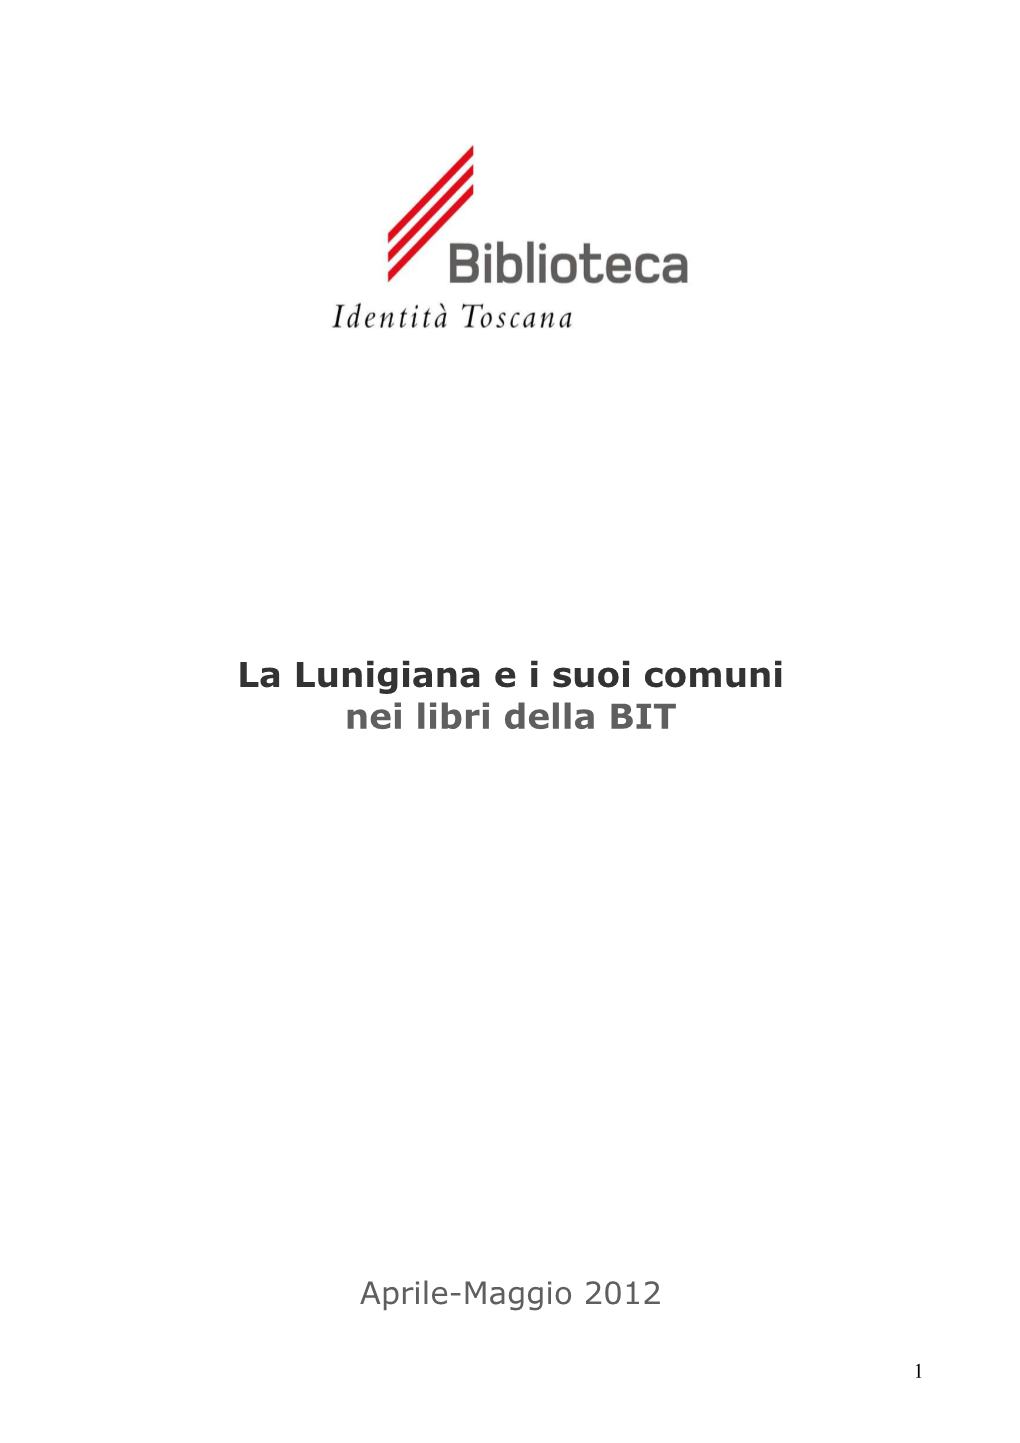 La Lunigiana E I Suoi Comuni Nei Libri Della BIT